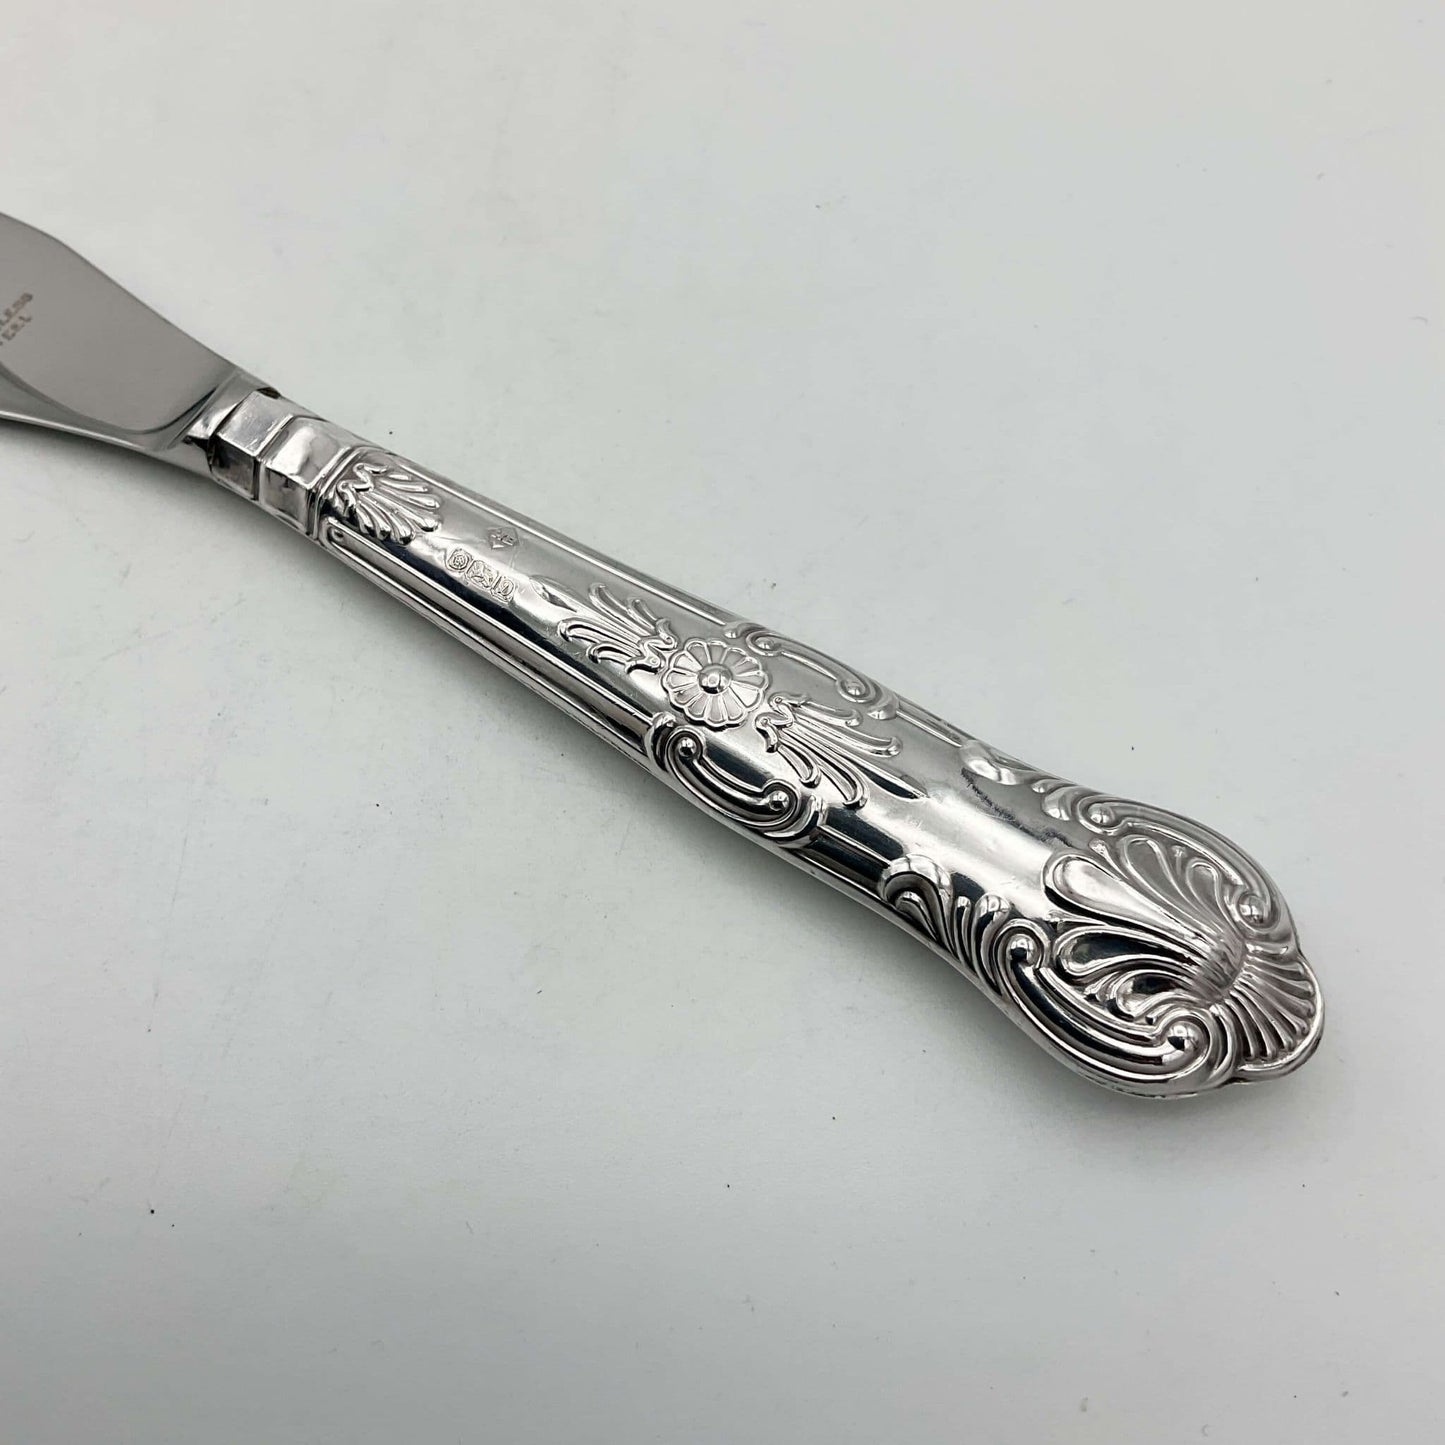 Vintage 1978 Solid Silver Handled Butter Knife, Butter Spreader